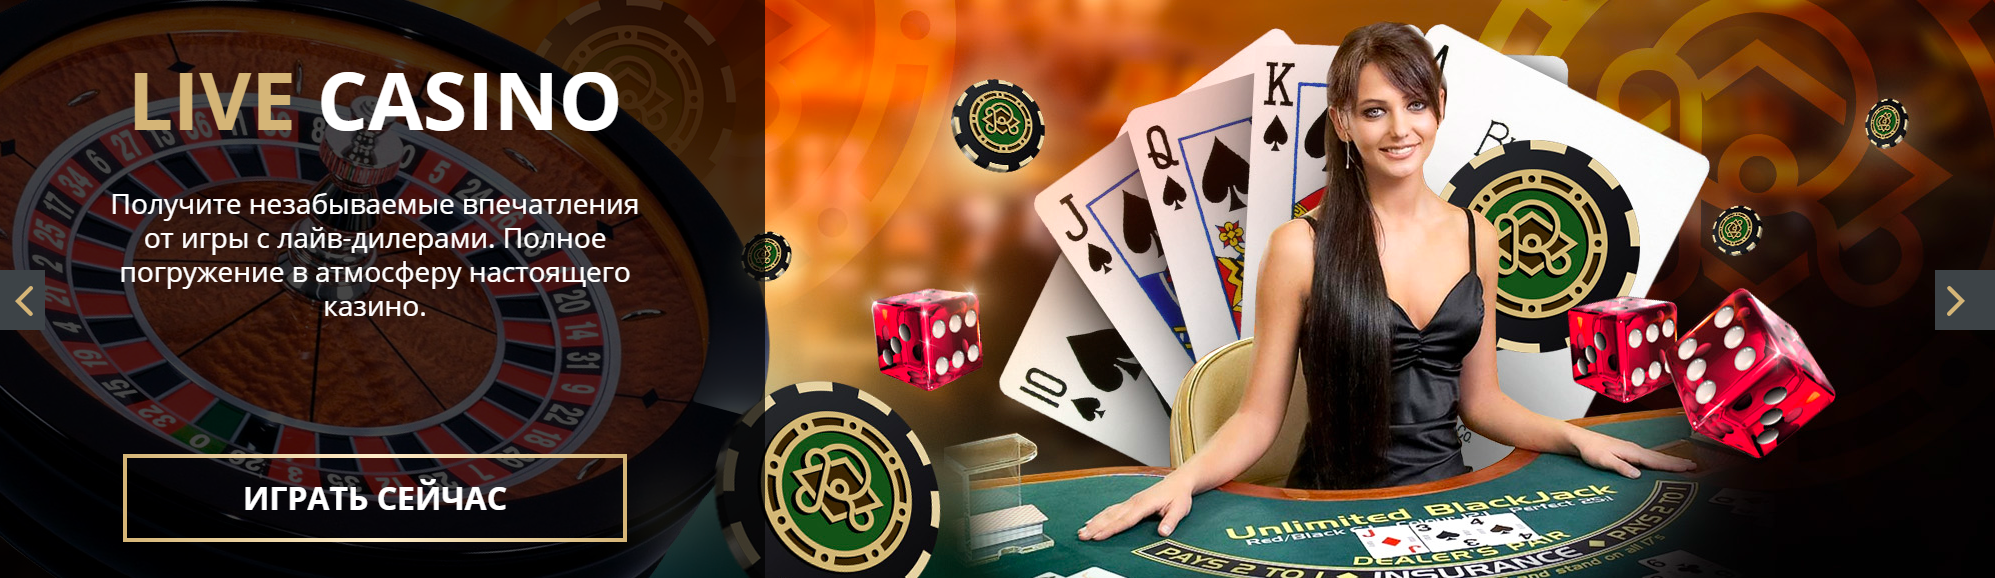 Лучшие онлайн казино россии с хорошей отдачей pin up bet pin up play casino